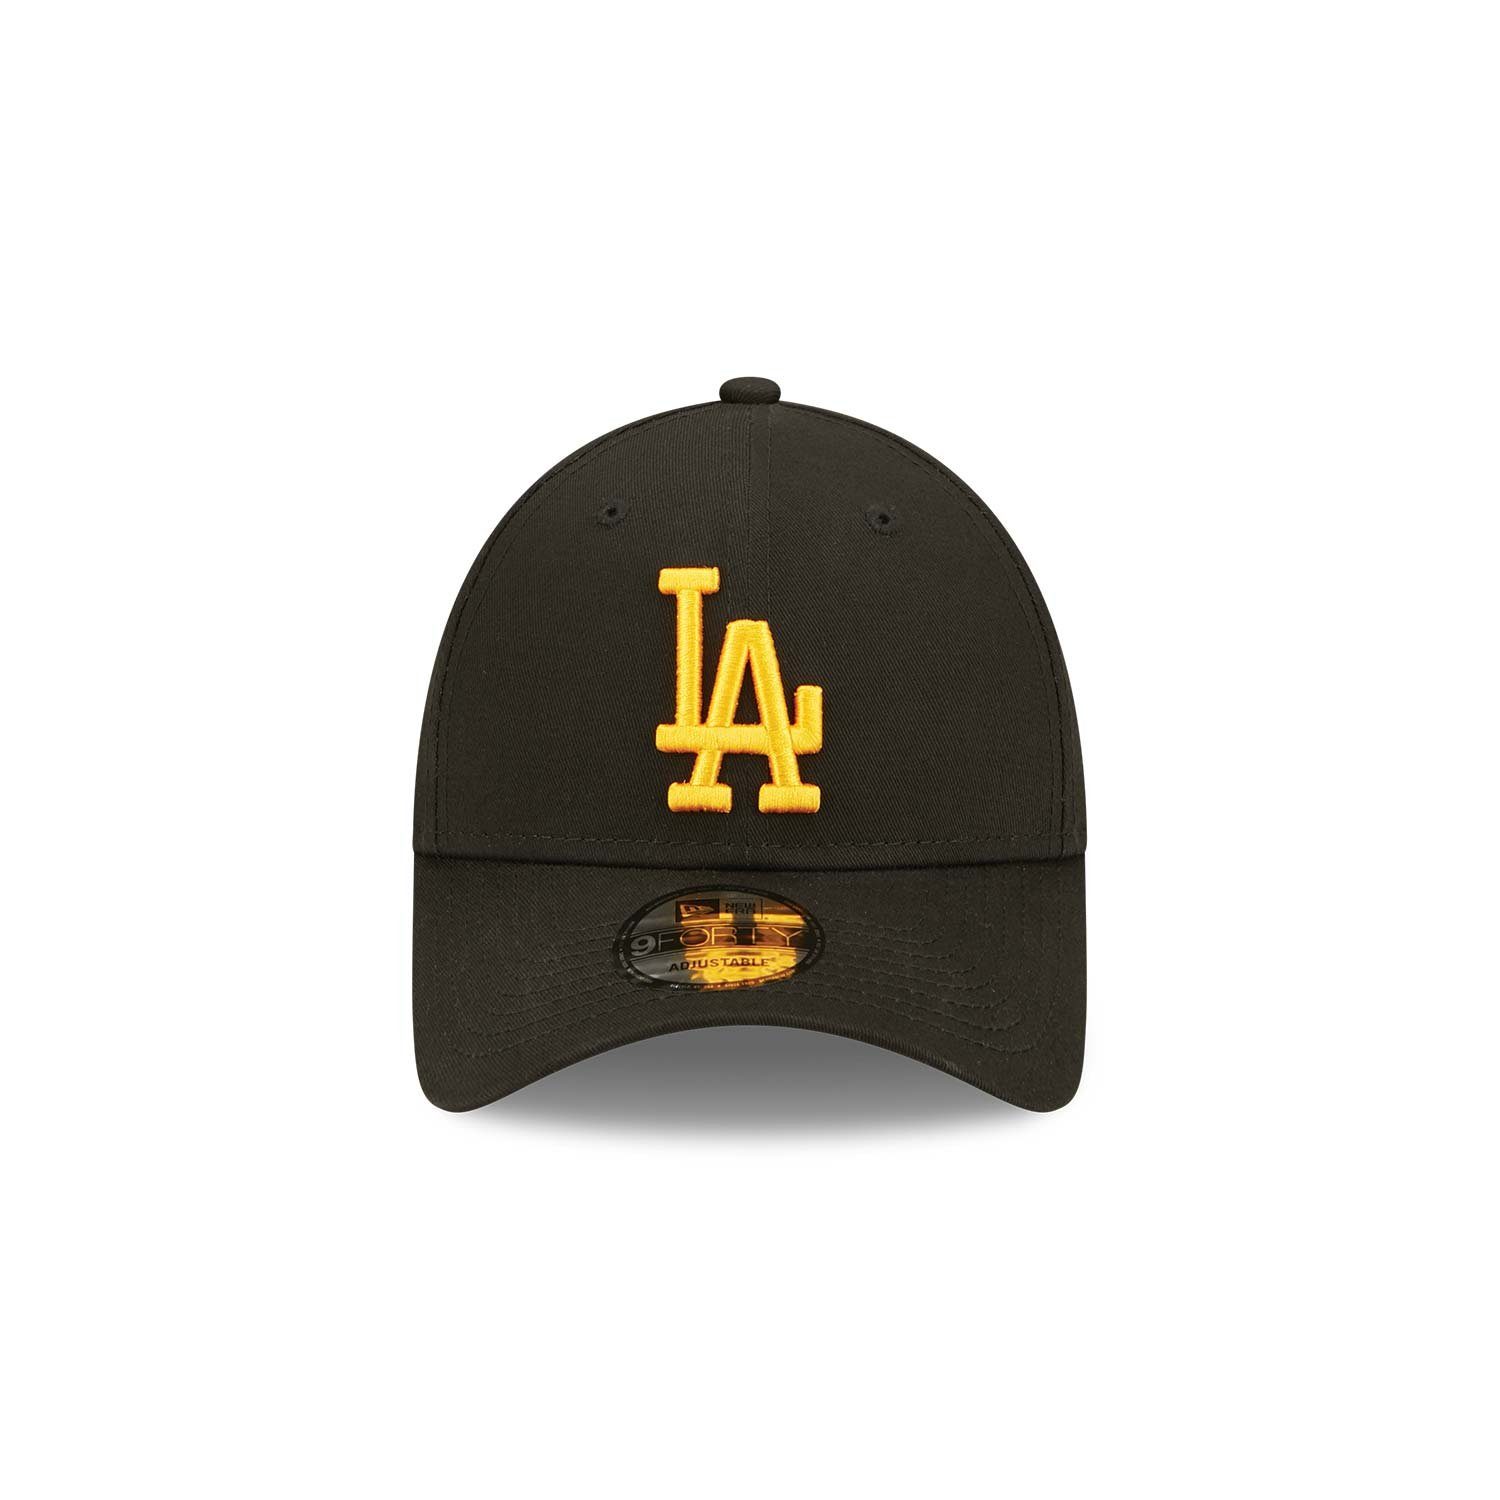 Los Cap Angeles New Essential League Era Dodgers Baseball